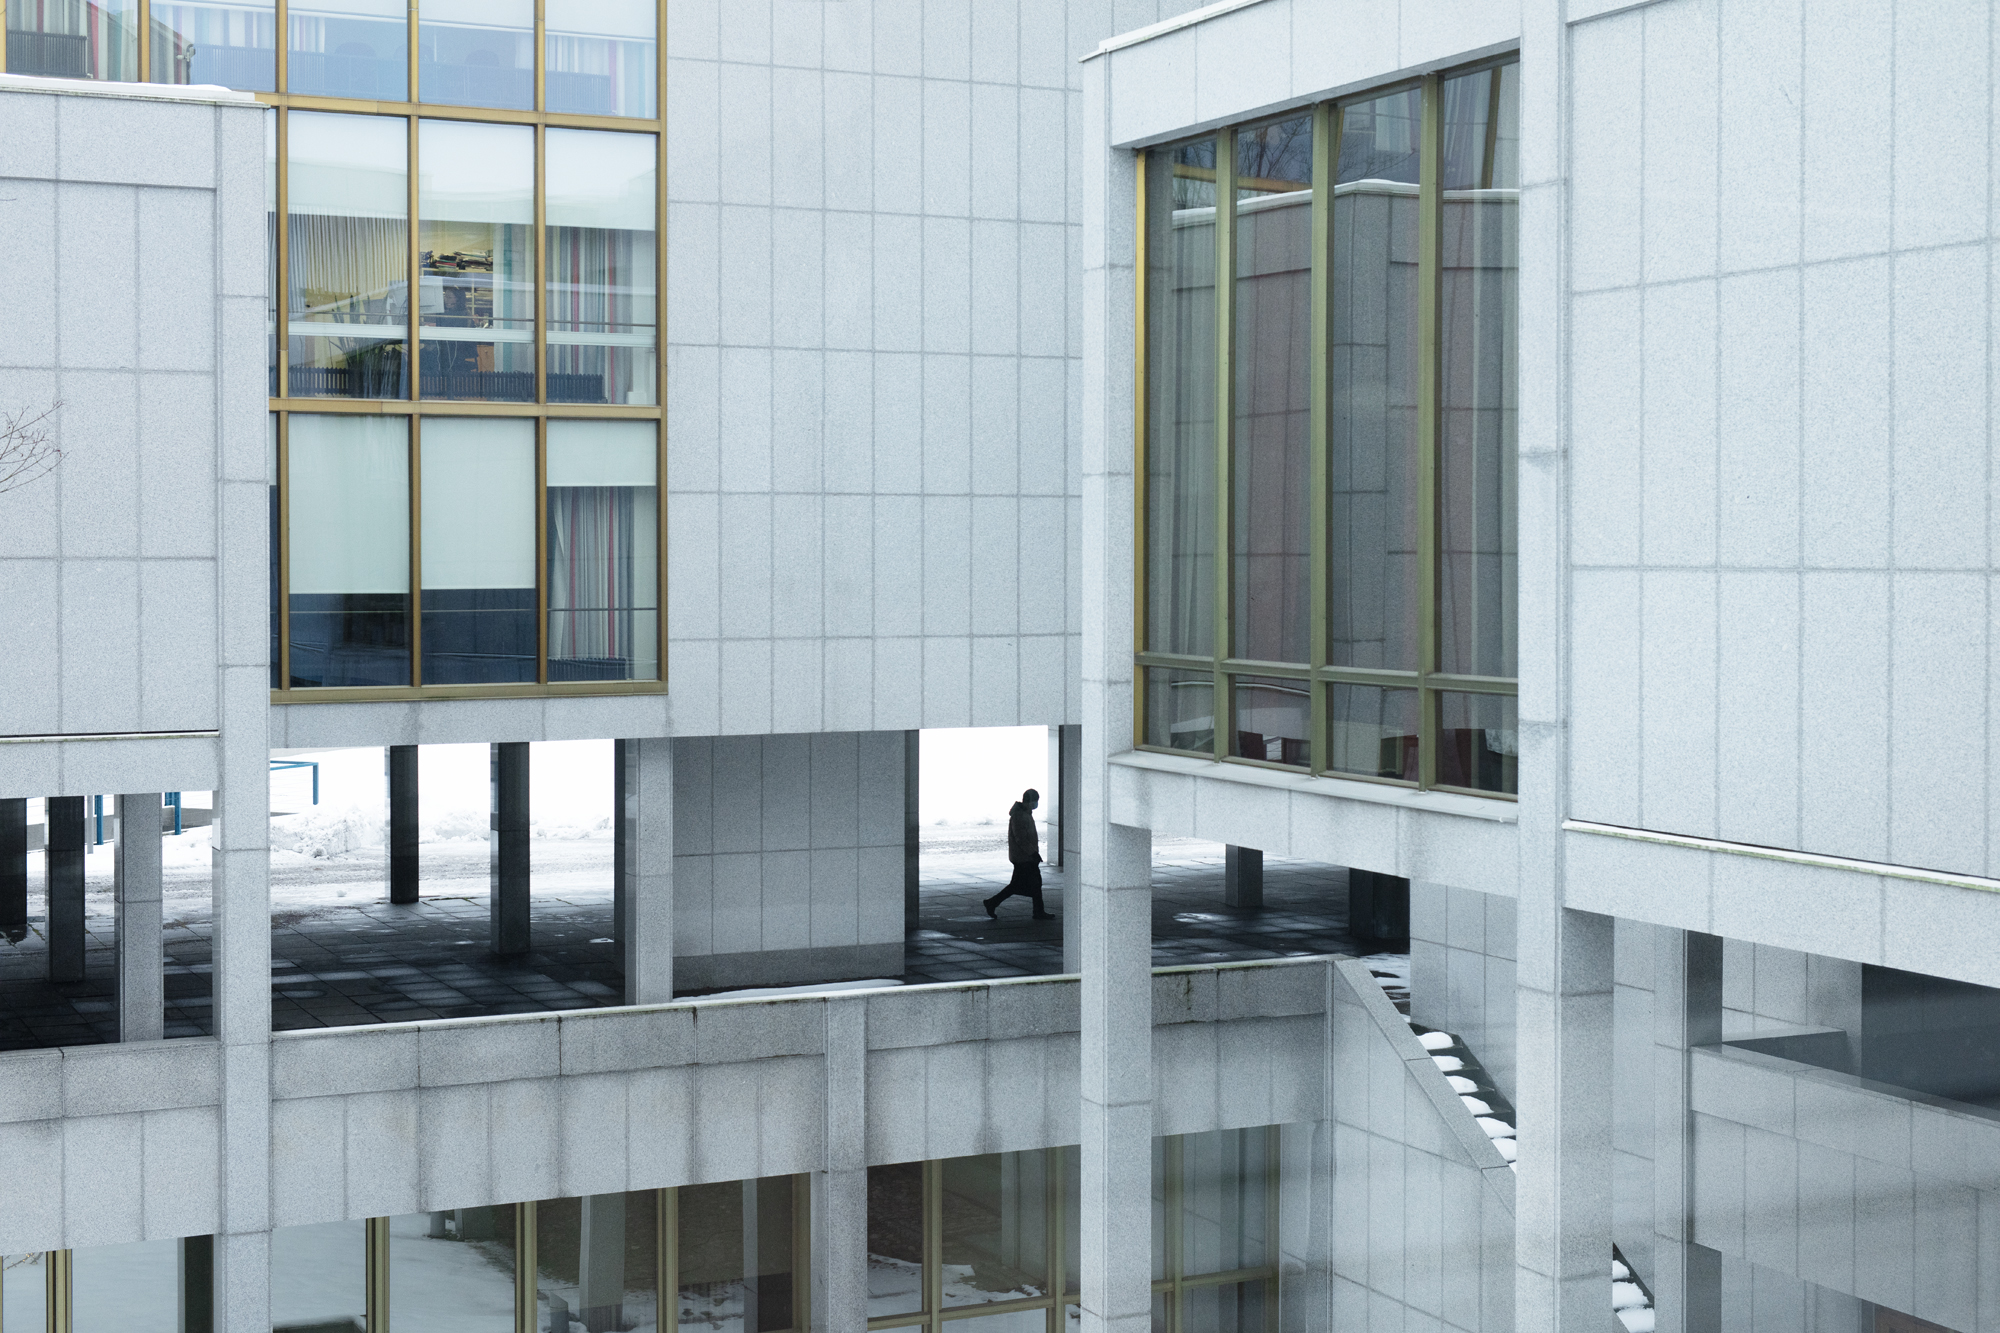 Illustration, grå kontorsbyggnaden och en man som går mellan kolonner.